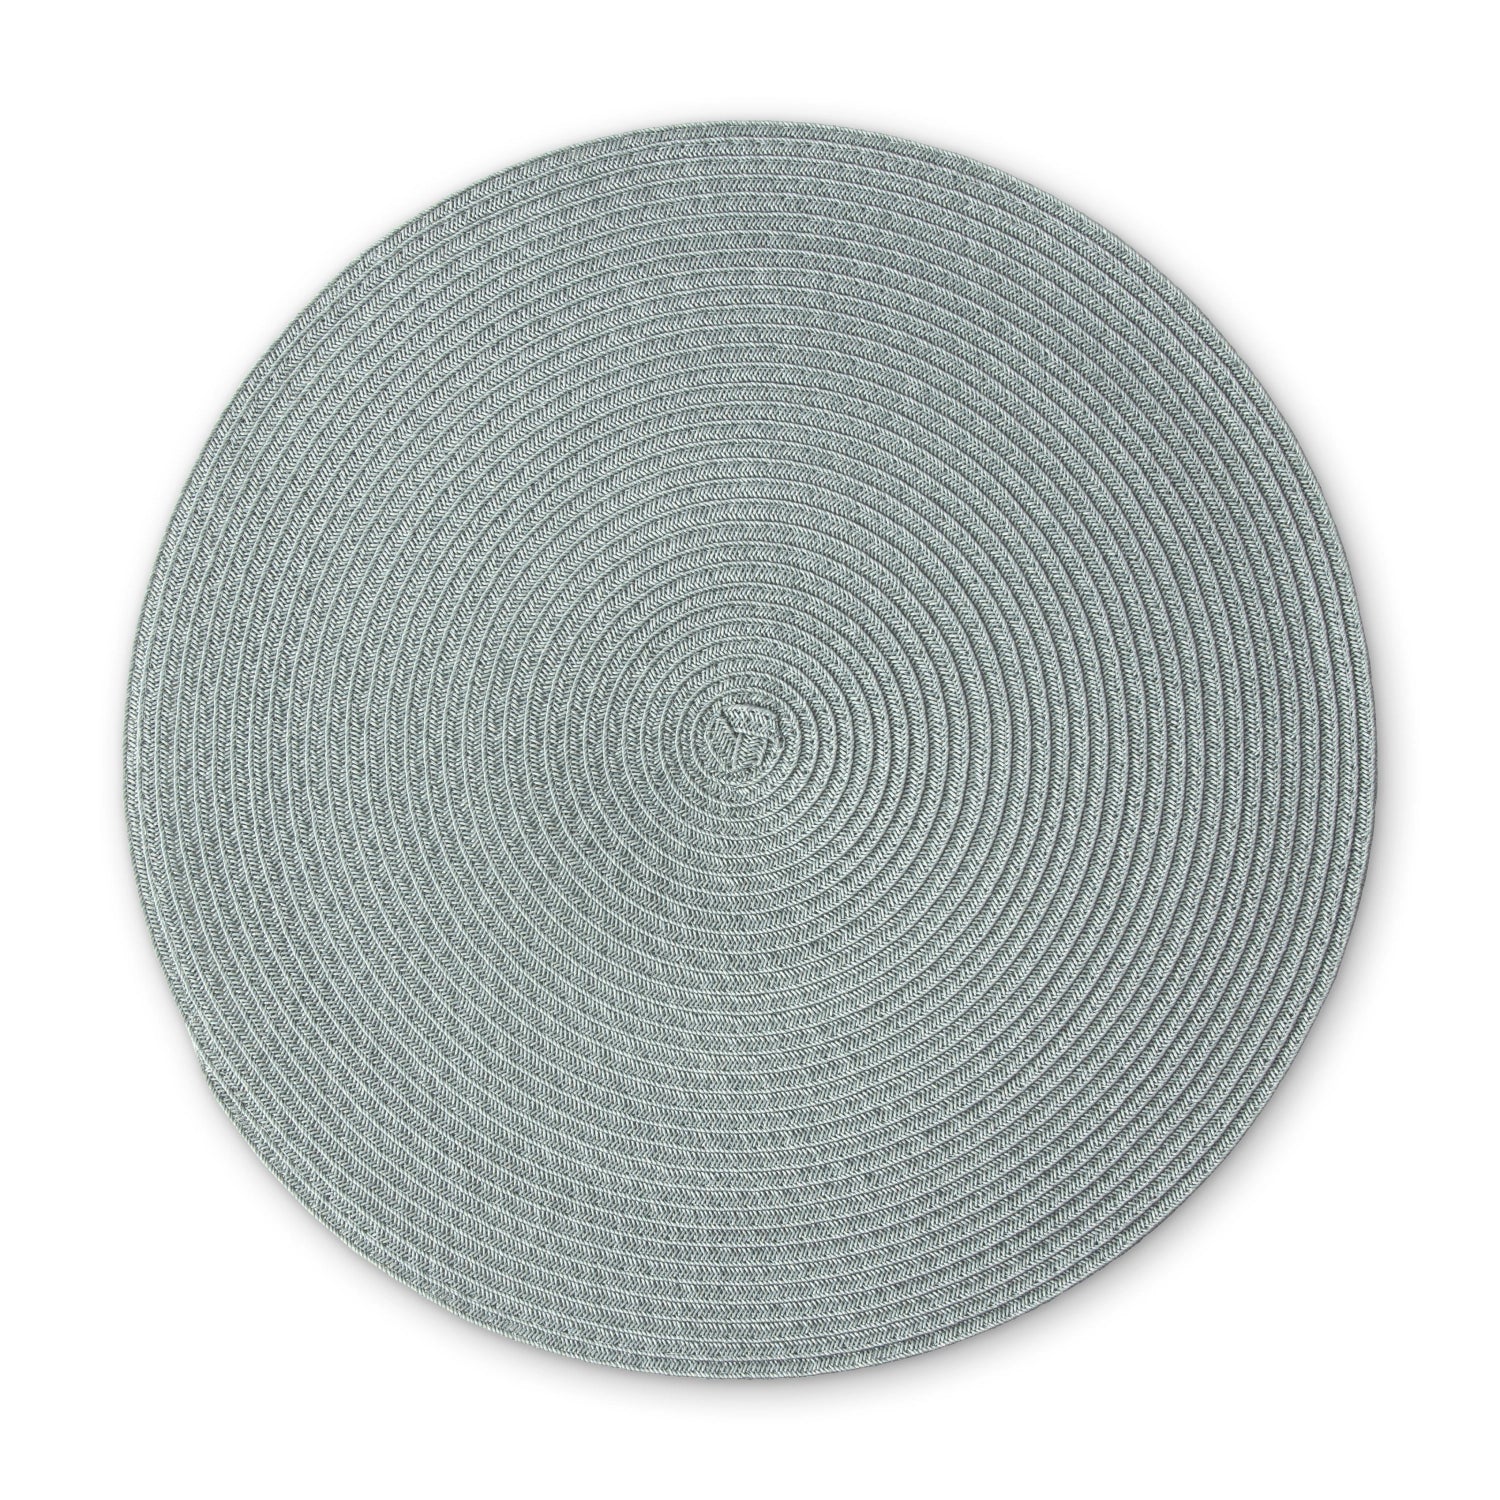 Tischset rund, graugrün, 38 cm - KAQTU Design